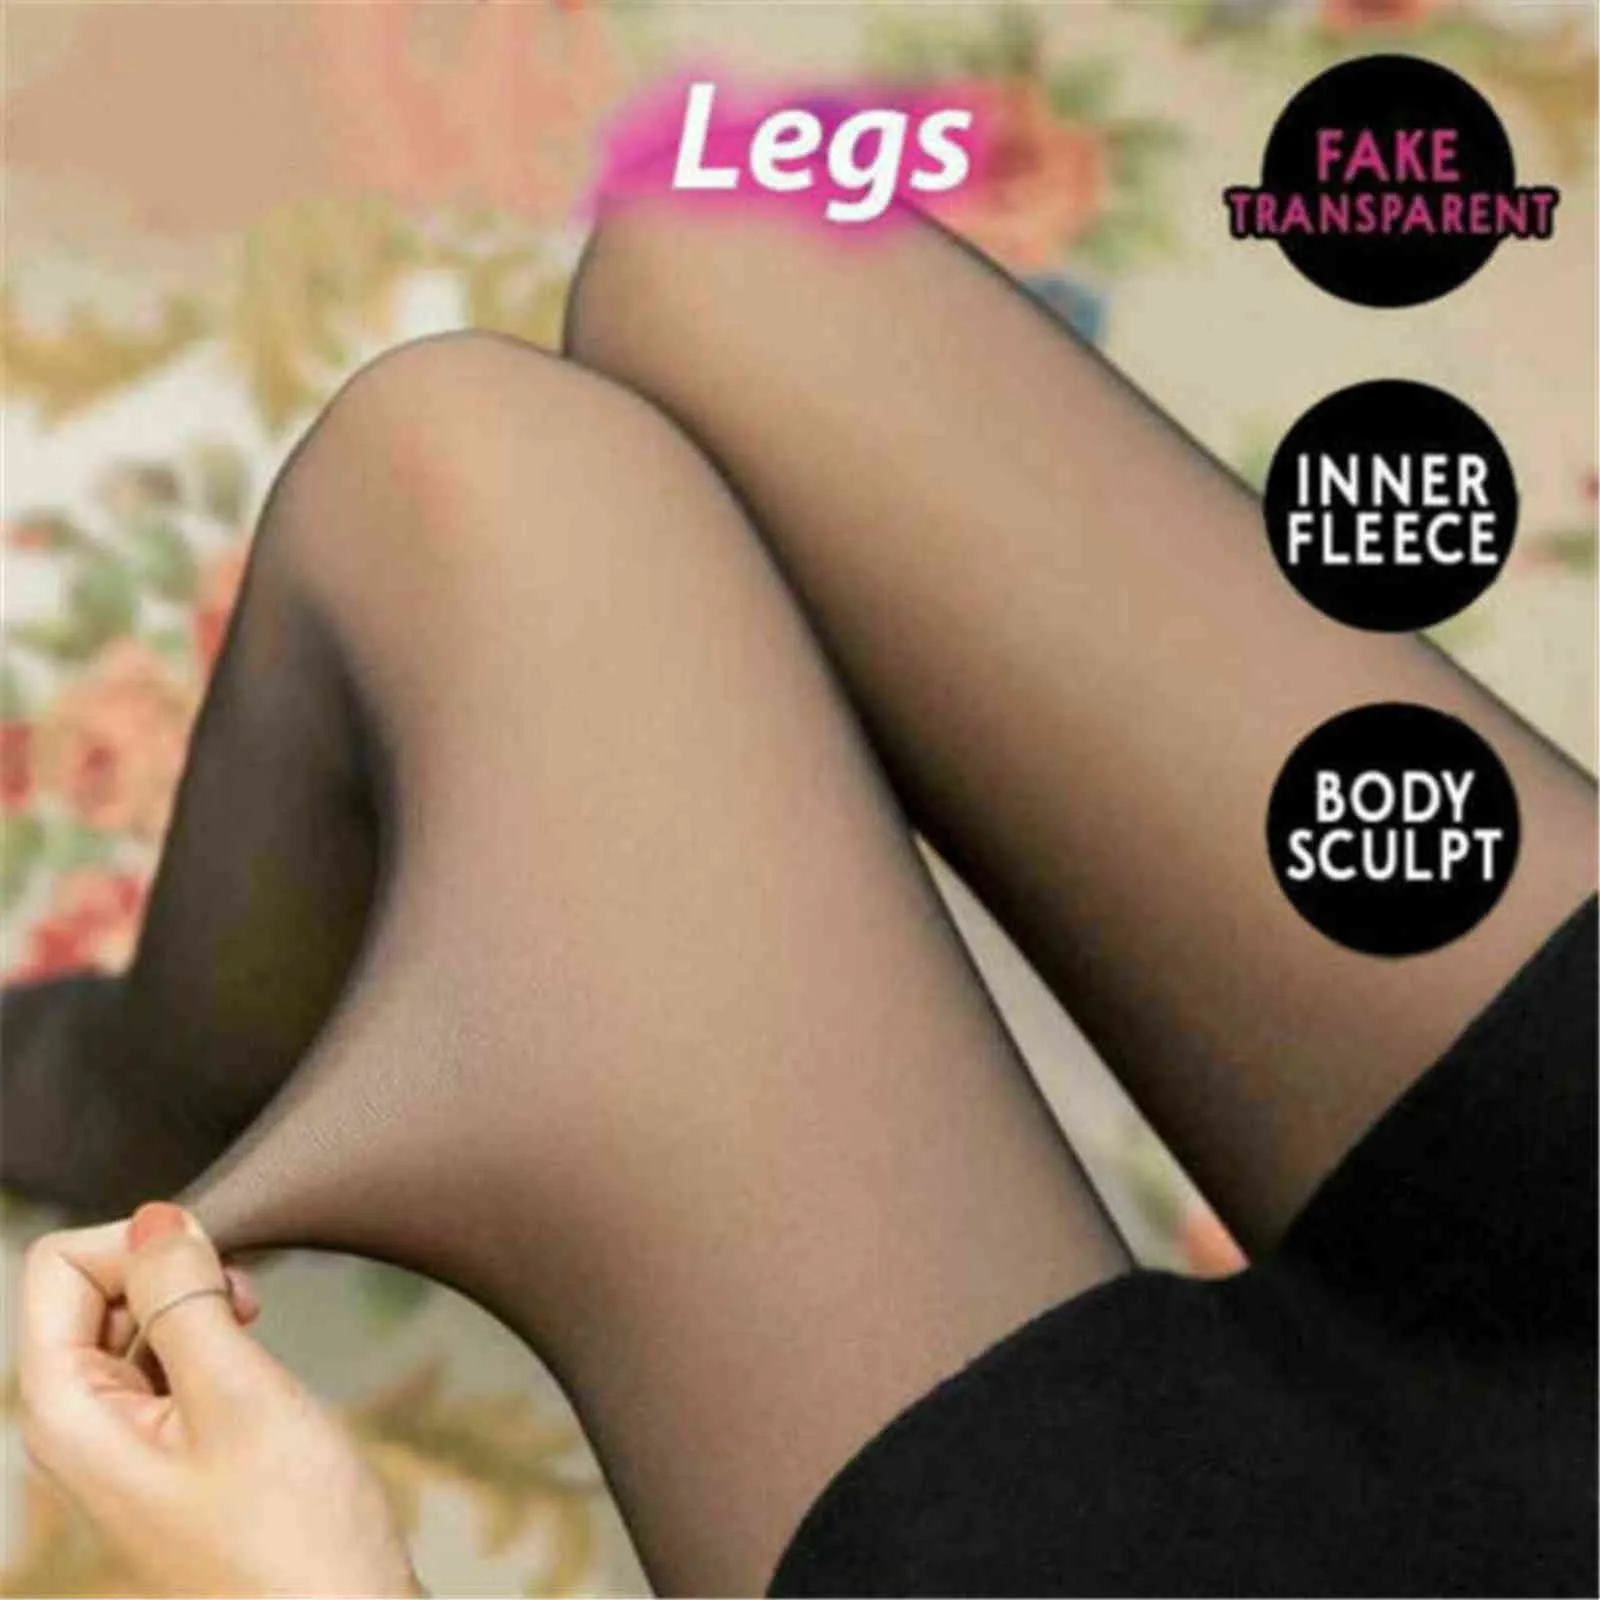 Flawless Legs Fake Translucent Warm Fleece PantyHose-Black / Grå / Kaffe Original Strumpor För Kvinnor Vinter Tjockad PantyHose Y1130